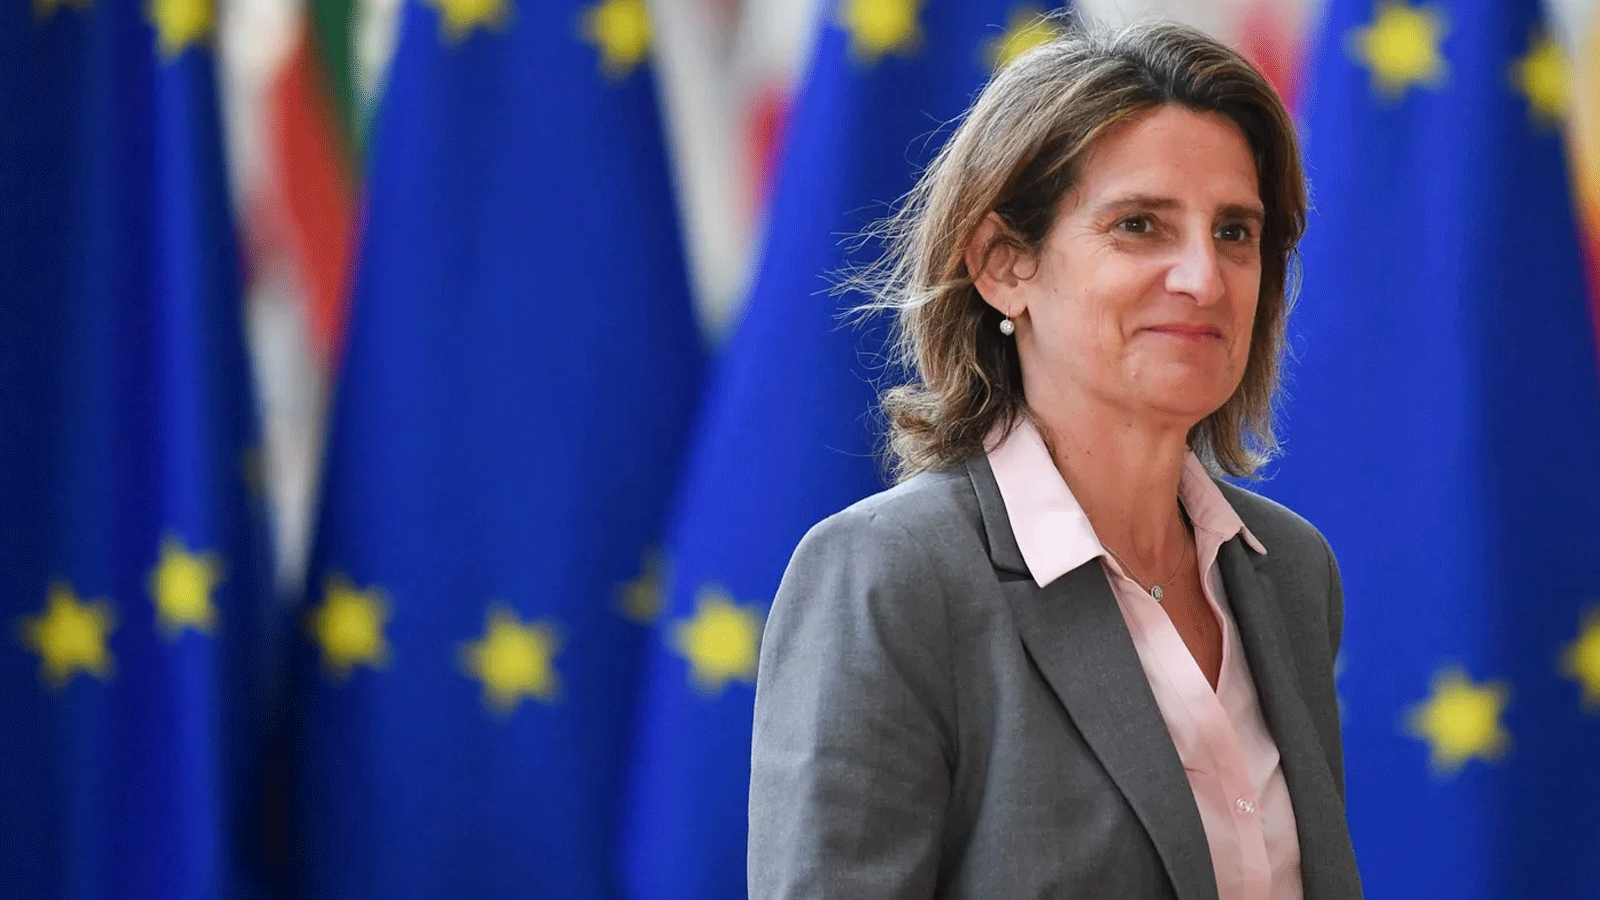 وزيرة التحول البيئي الاسبانية تيريزا ريبيرا نددت بخطة بروكسل باعتبارها 